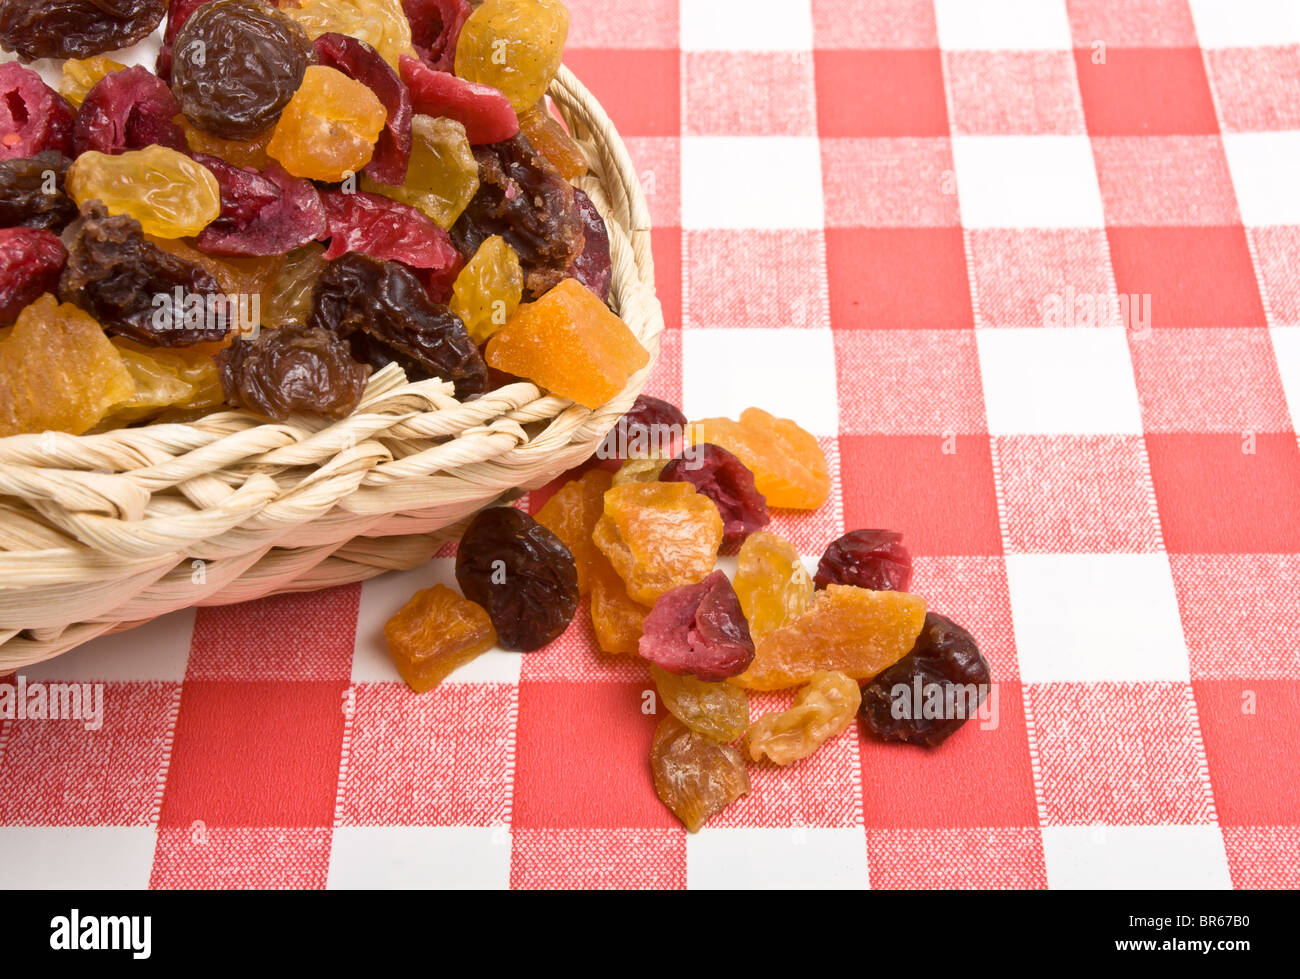 Frutta secca di albicocca, uva sultanina, uva passa e mirtilli rossi si versi sulla rosso e tovaglie bianche. Foto Stock